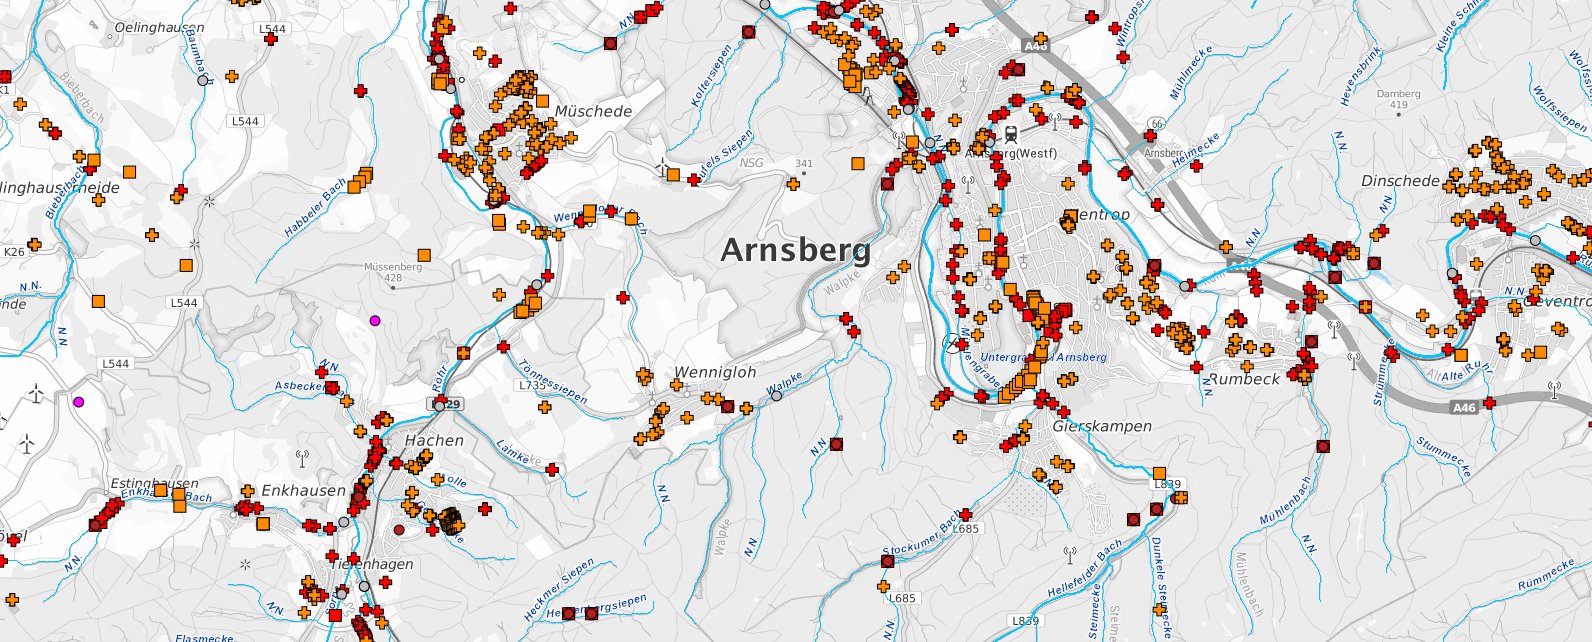 Kartenausschnitt Karte Nordrhein-Westfalen, Bereich Arnsberg, mit unterschiedlichen Symbolen für die Nutzungsorte von verschiedenen Rechtsverhältnissen zur Benutzung von Gewässern